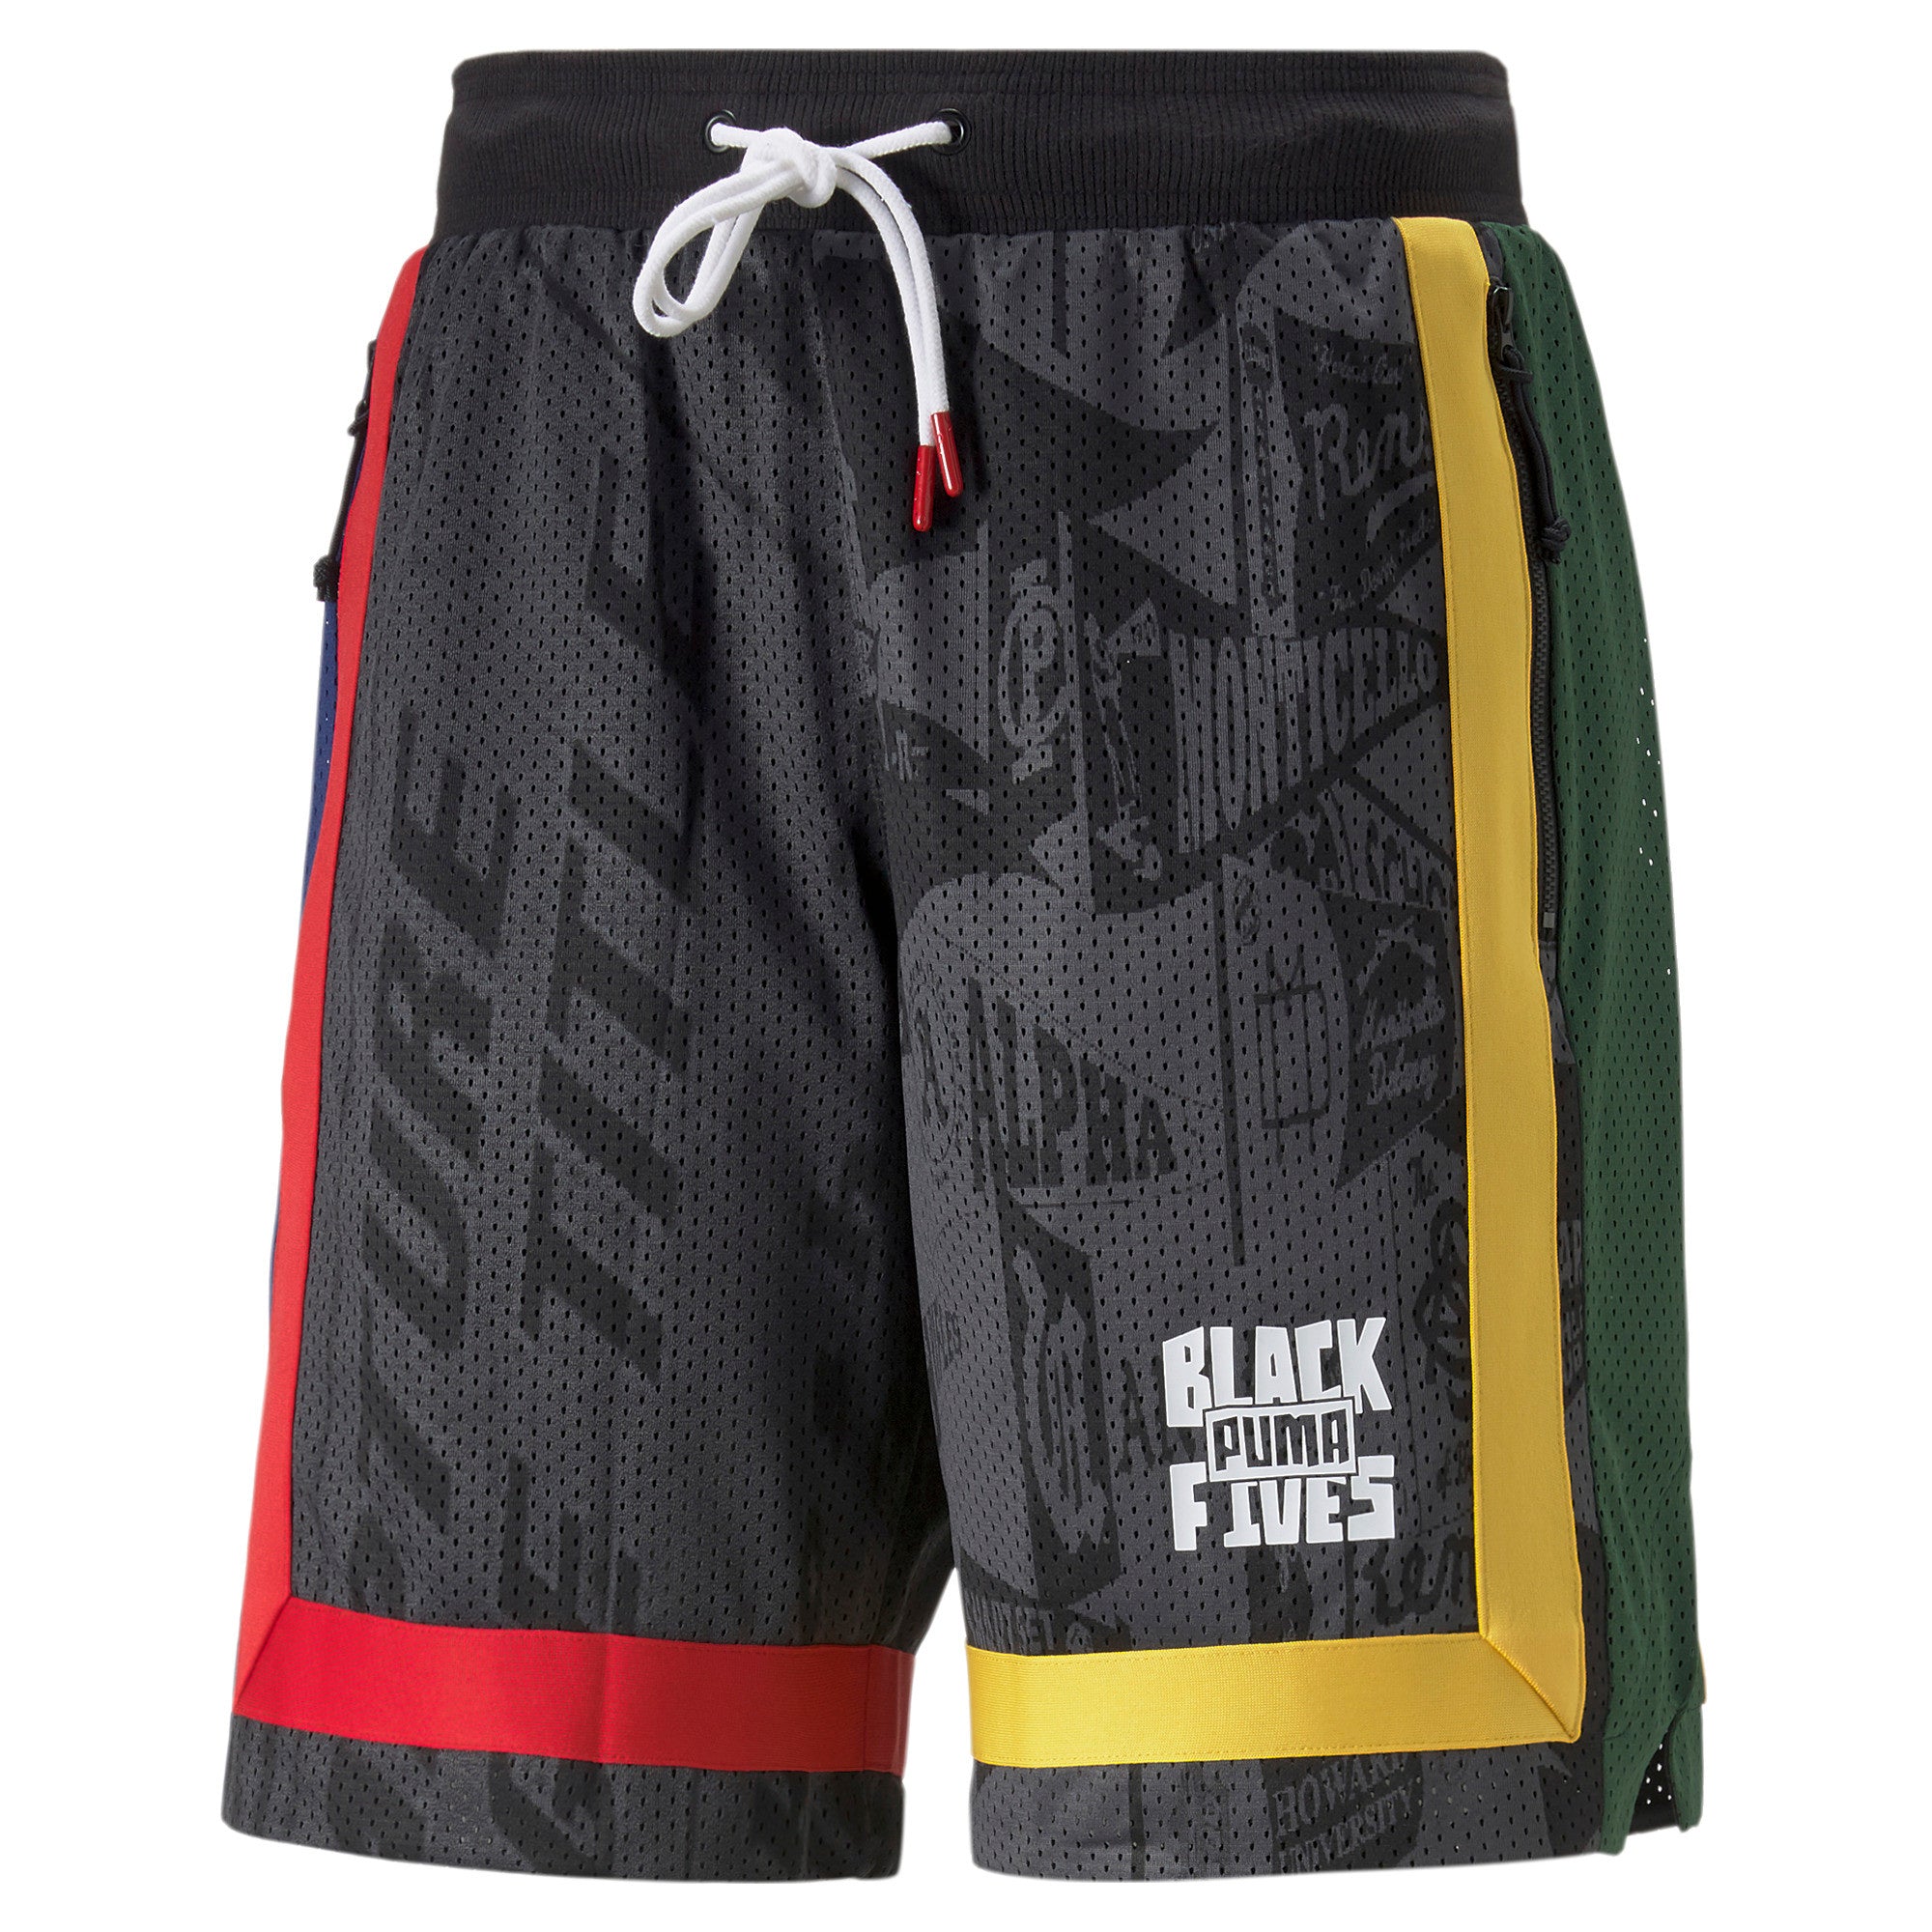 Puma x Black Fives Men's Colorblock Basketball Shorts - Bergdorf